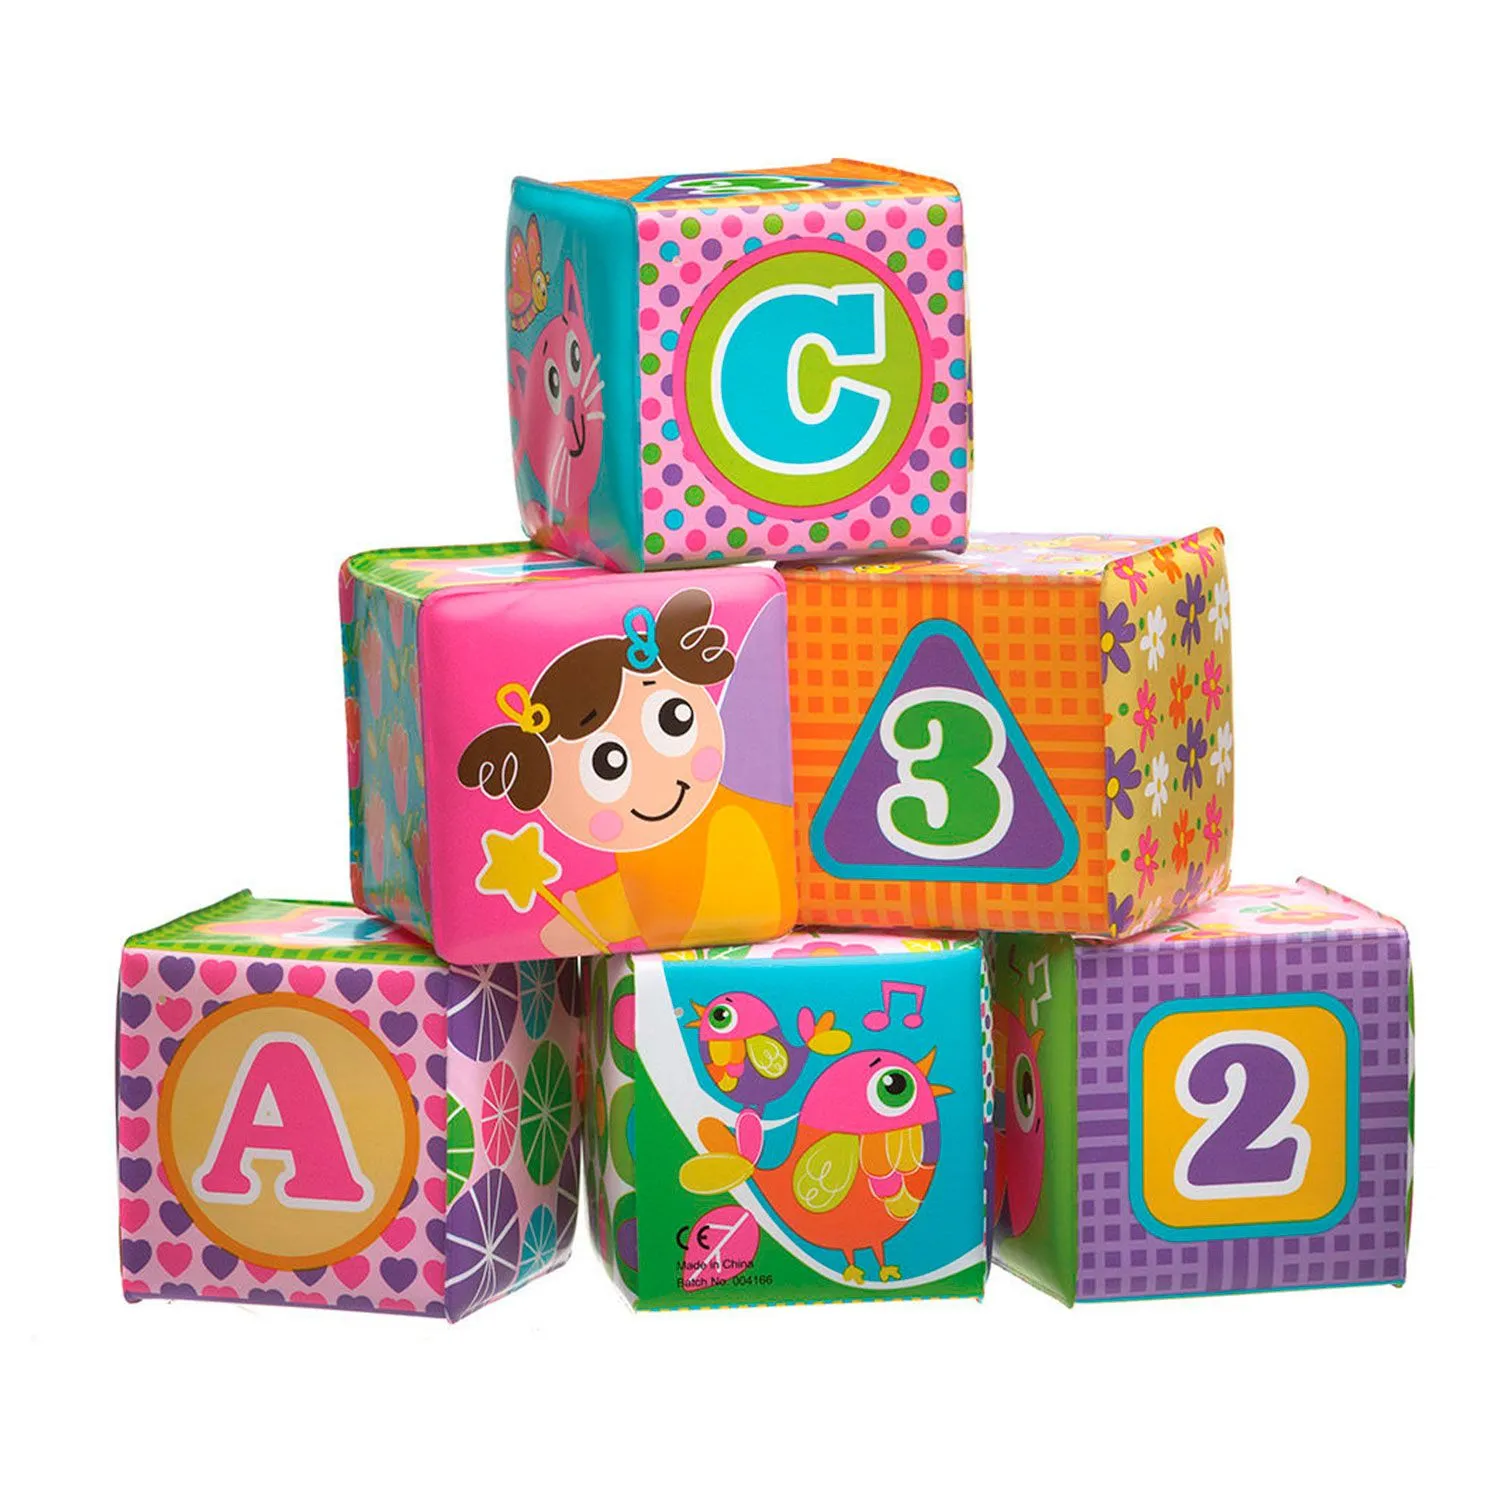 Кубики Мягкие - Развивающие игрушки 26 объявлений в Украине на BON.ua